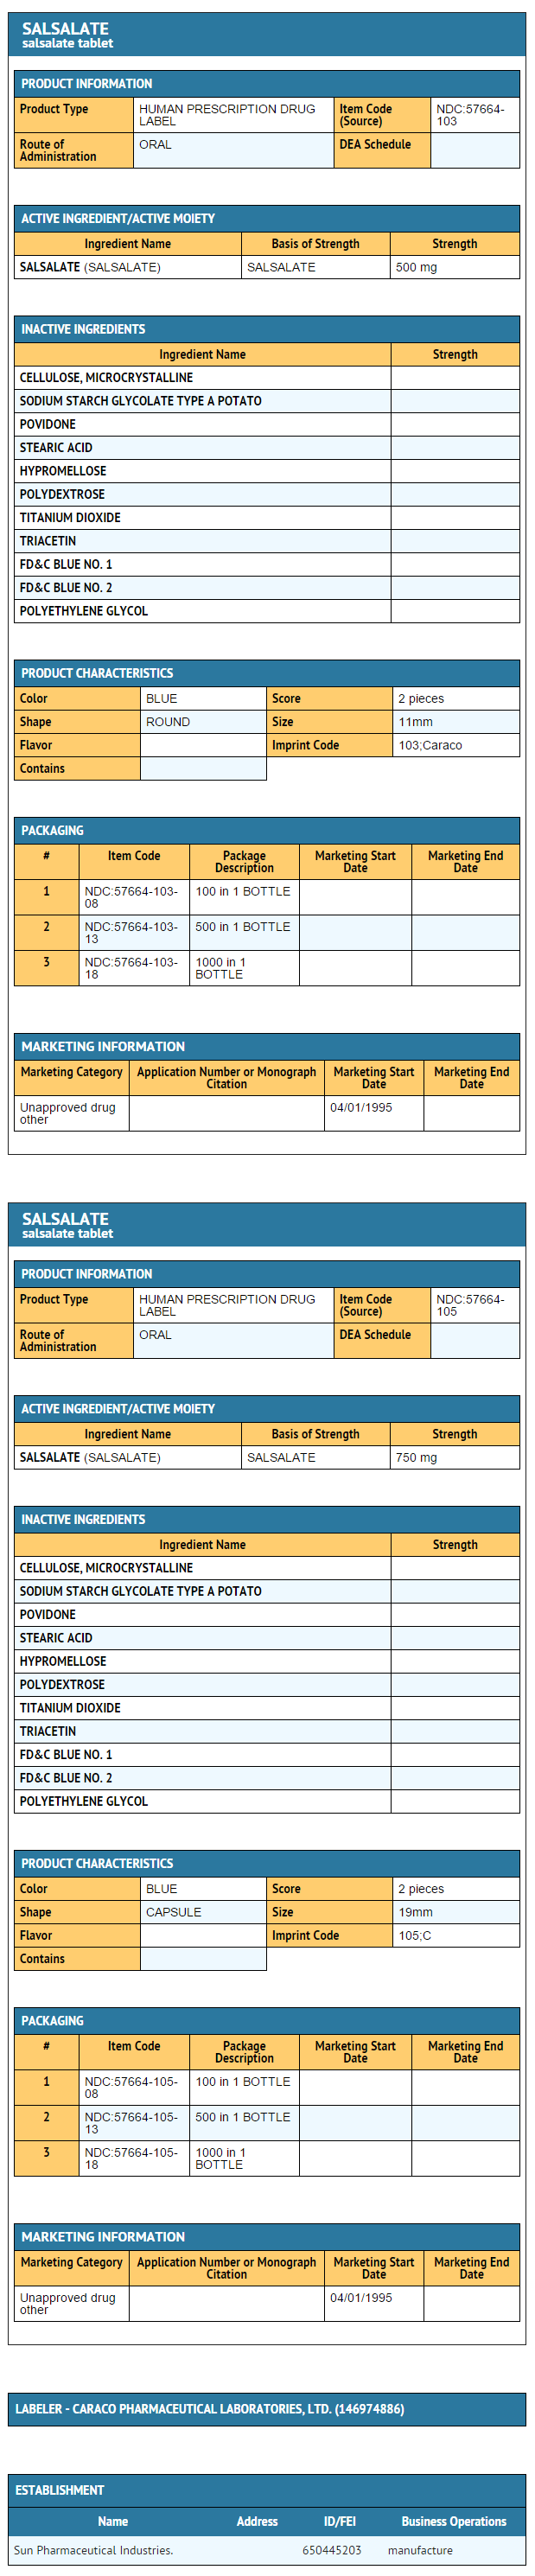 File:DailyMed - SALSALATE - salsalate tablet .png